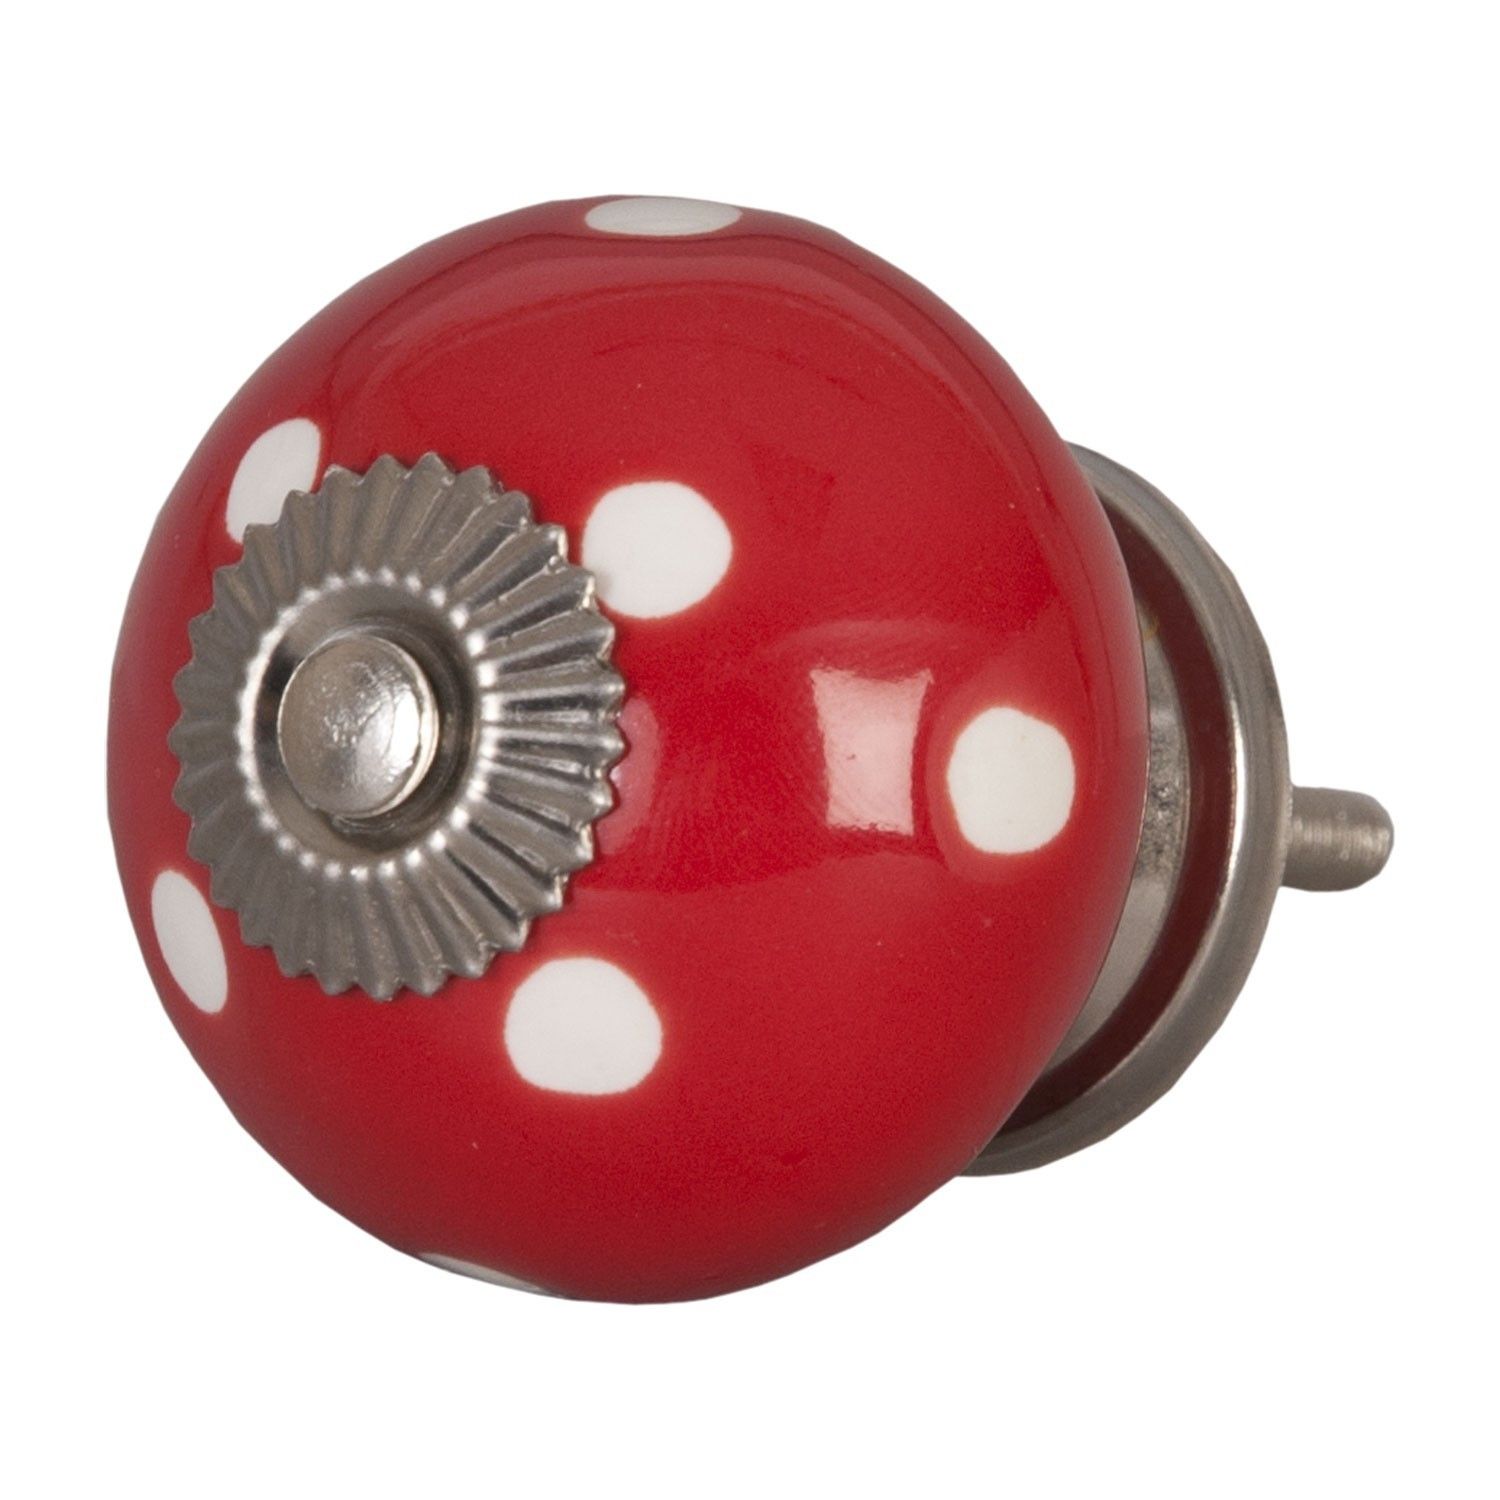 Červená keramicka úchytka s puntíky -  Ø 4 cm Clayre & Eef - LaHome - vintage dekorace